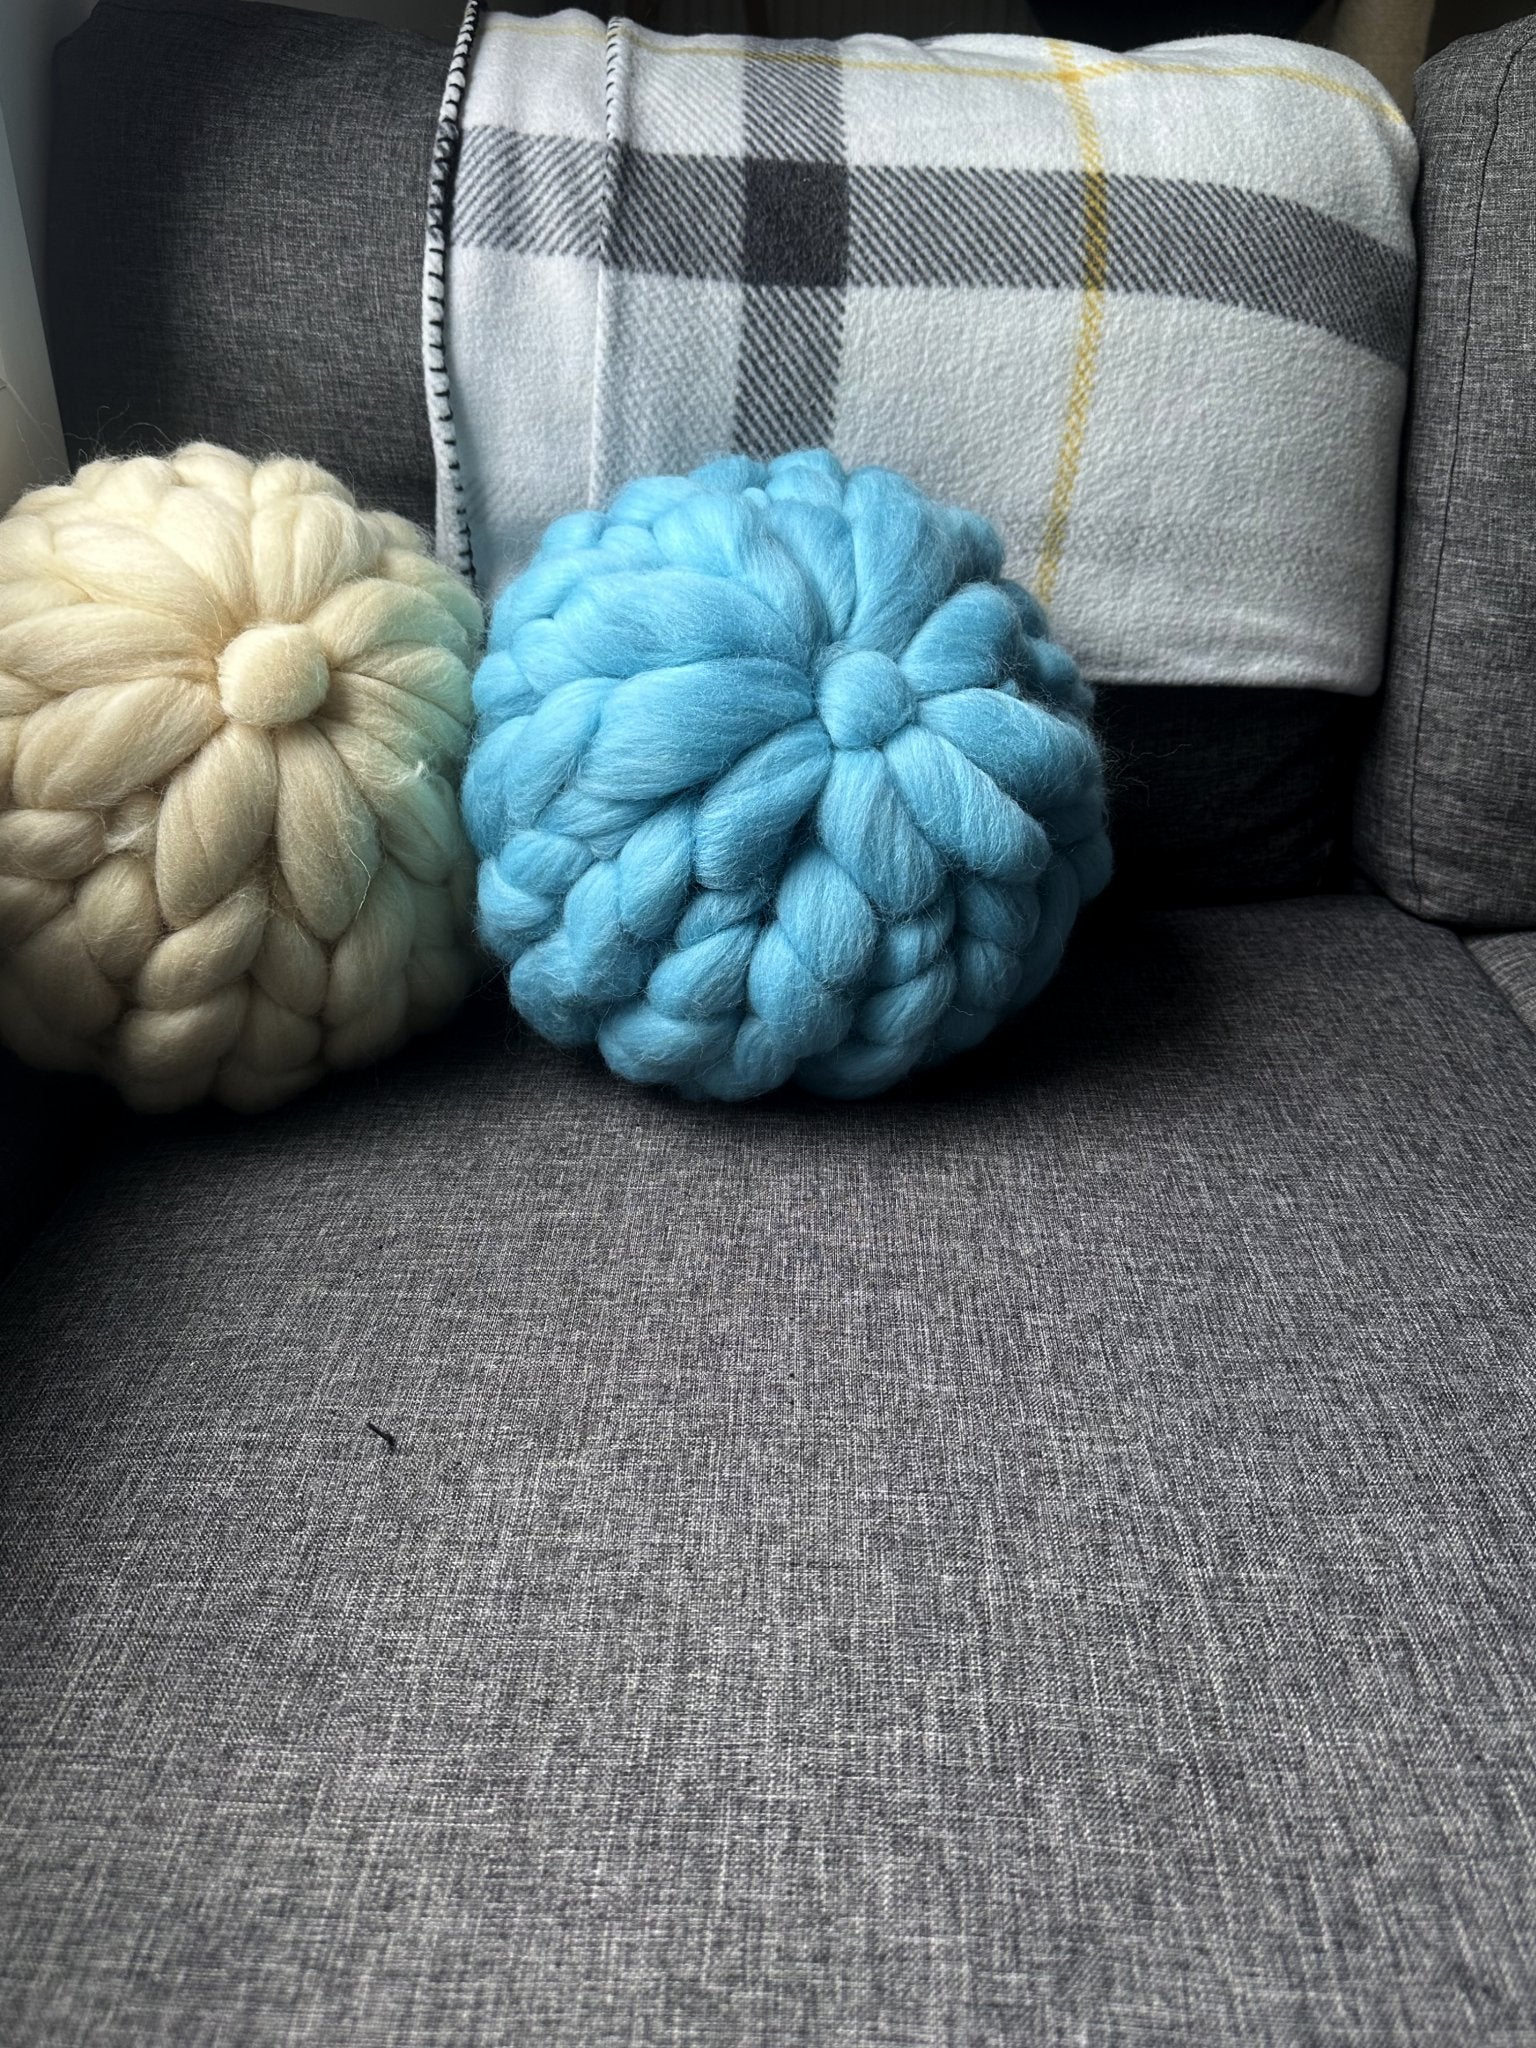 Coussin en laine mérinos blanc / écru - grosses mailles - Plaid